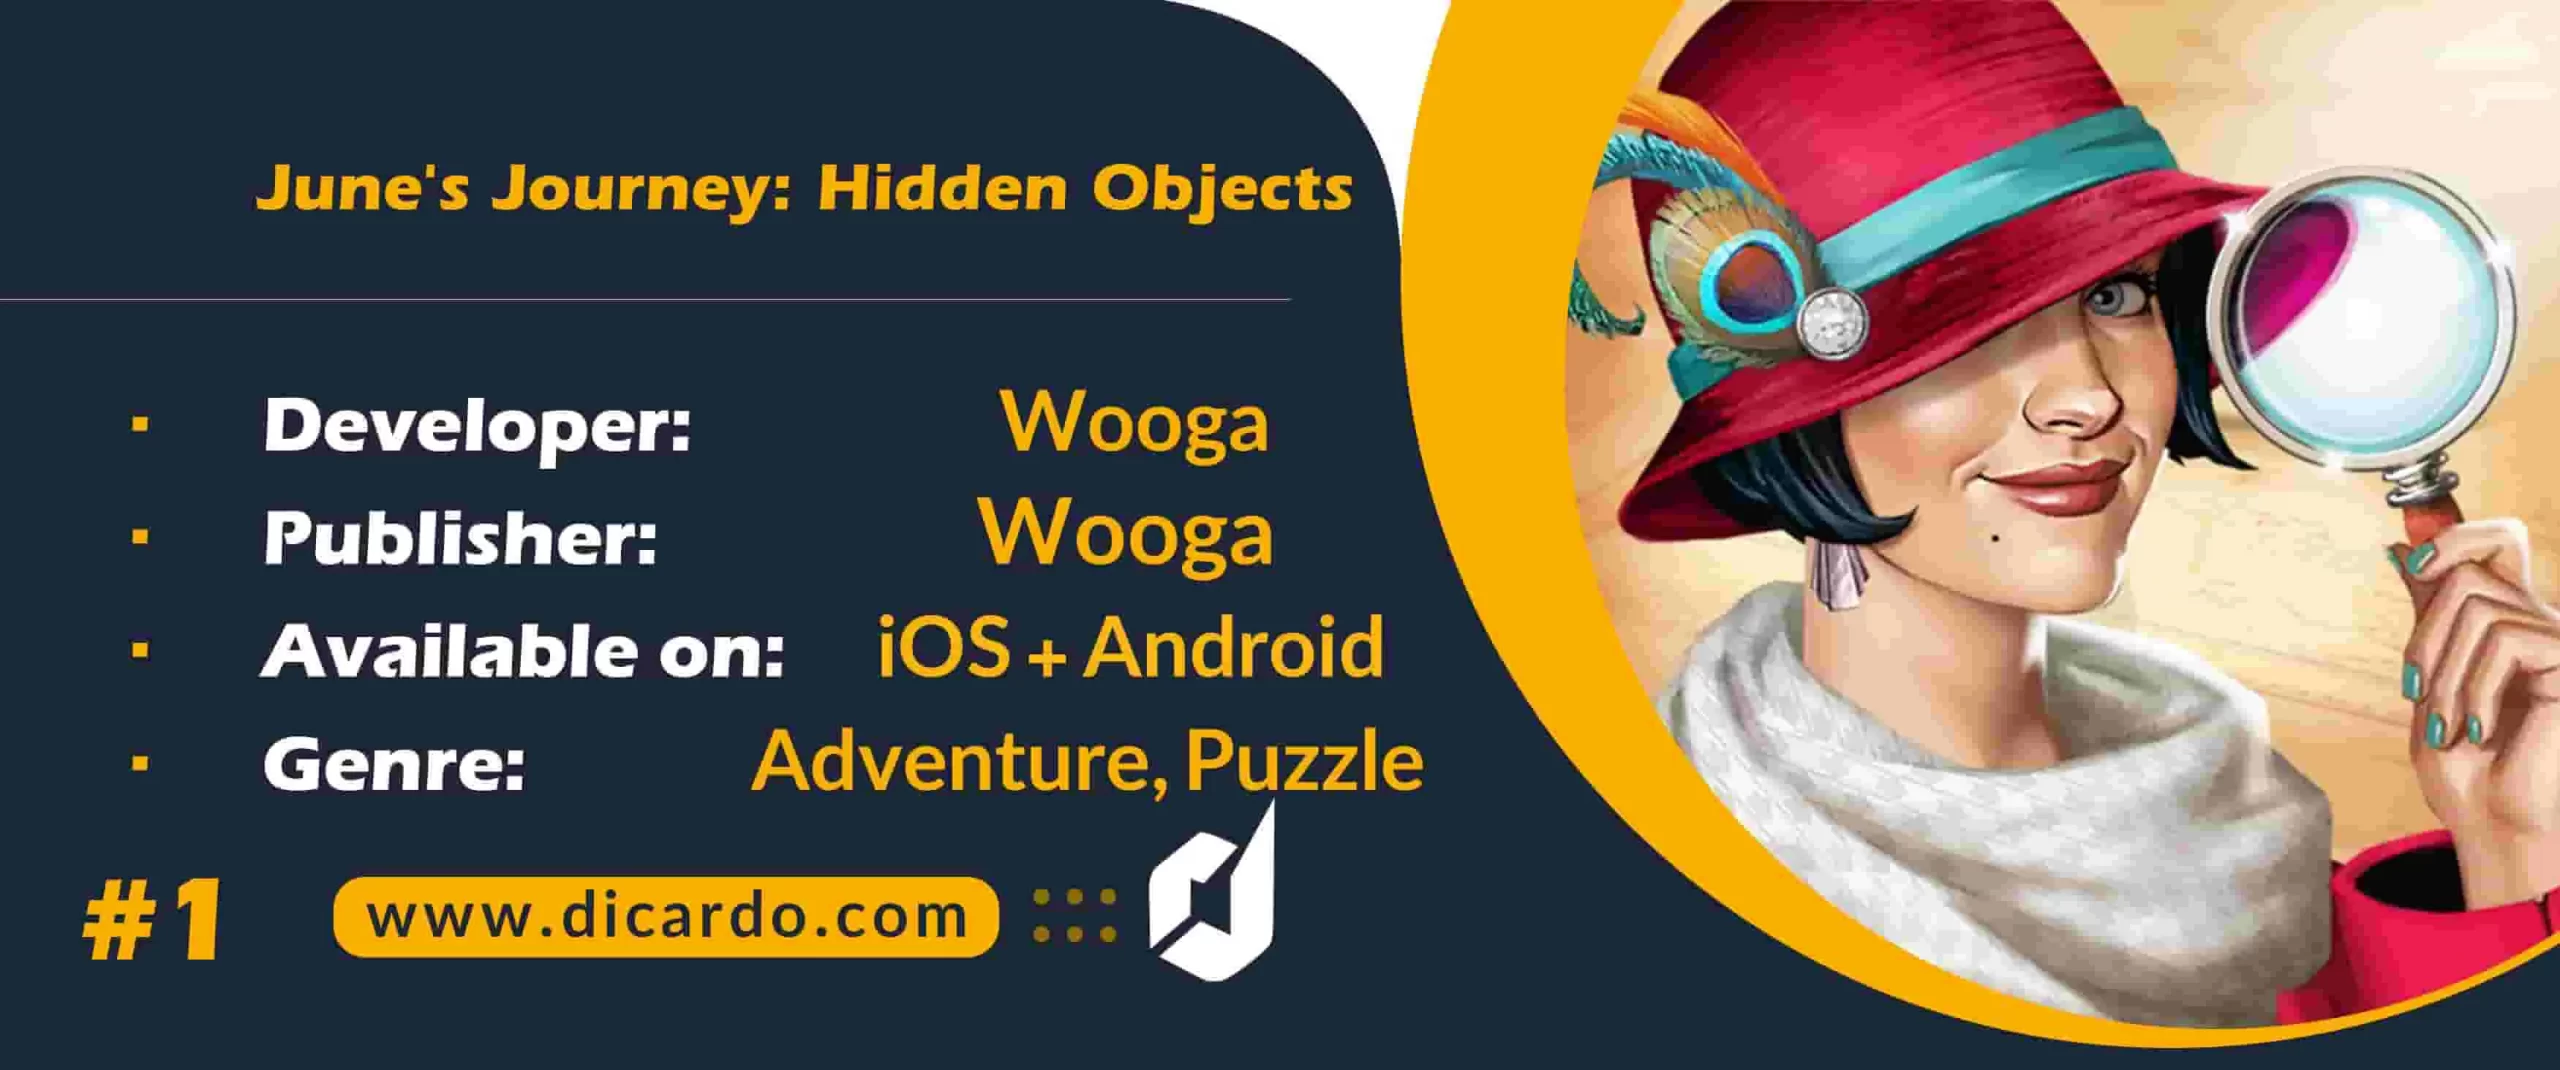 #1 سفر ژوئن: اشیاء پنهان June’s Journey: Hidden Objects اول مورد از بهترین بازیهای شی پنهان